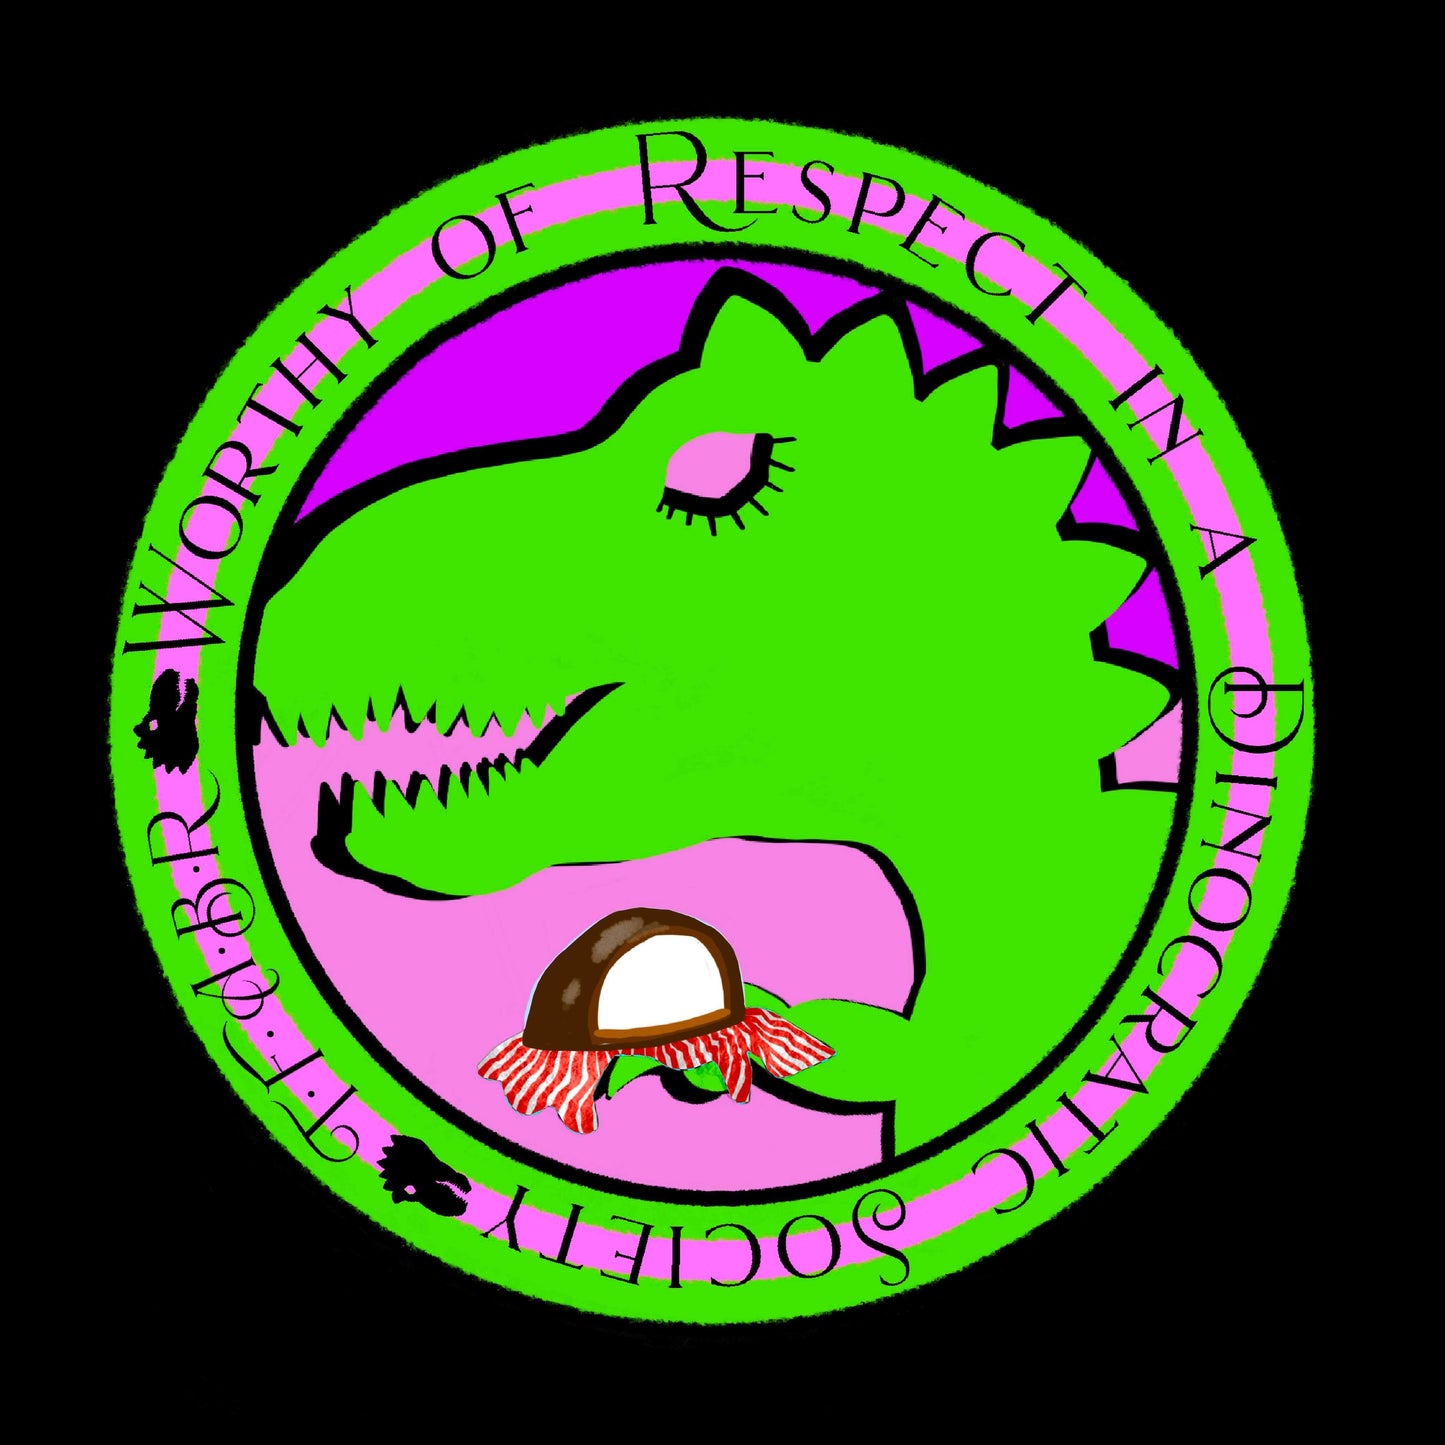 Dinocratic Society